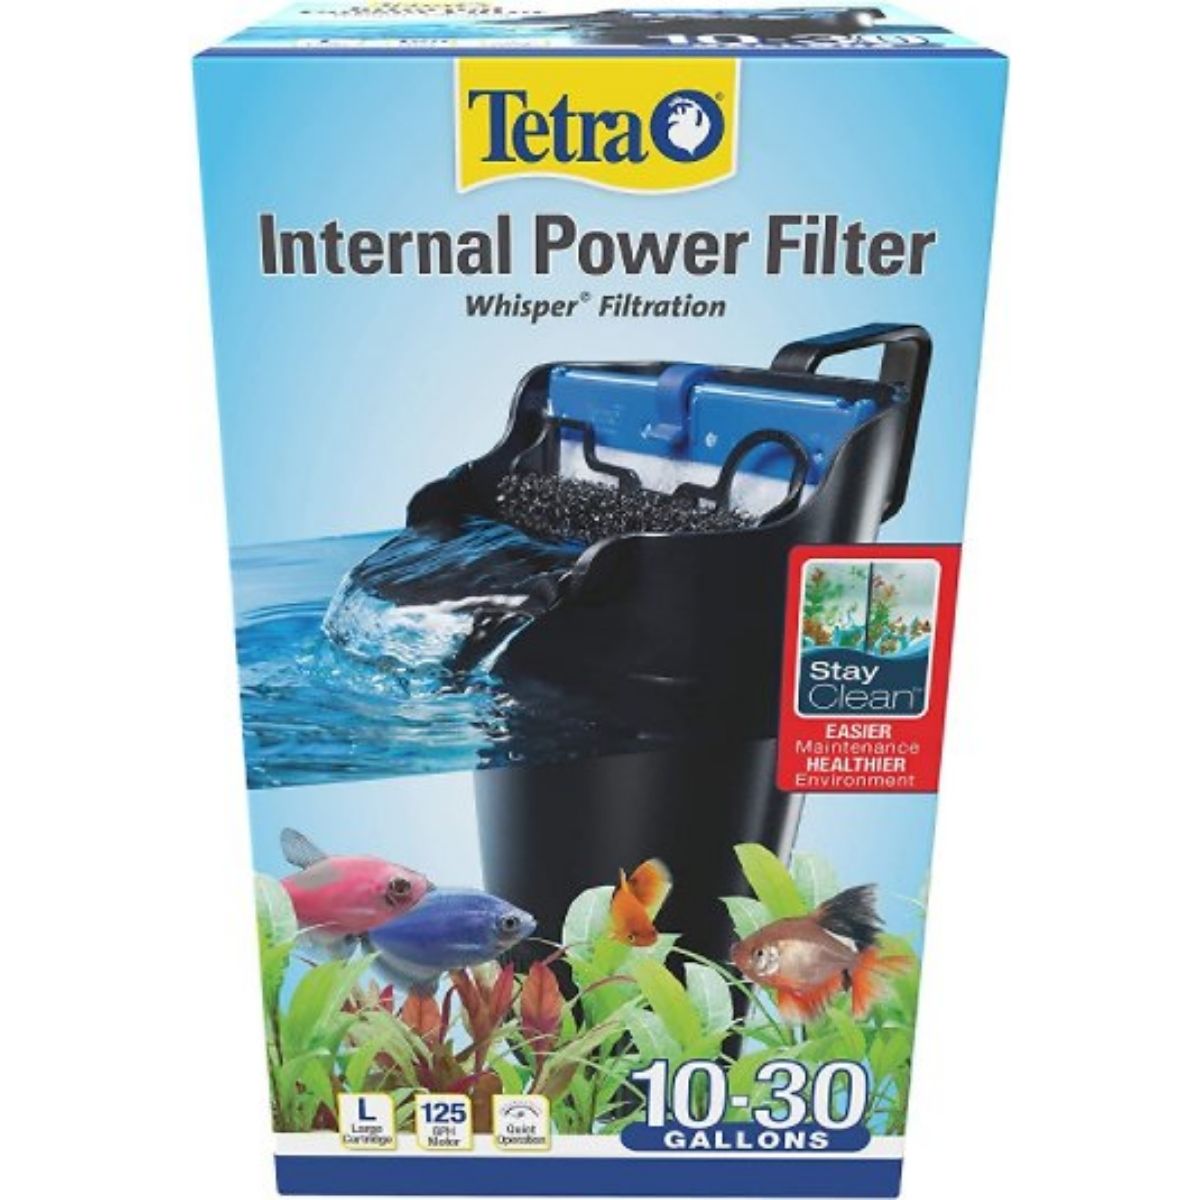 The Best Filter for Betta: Tetra Whisper Internal Filter